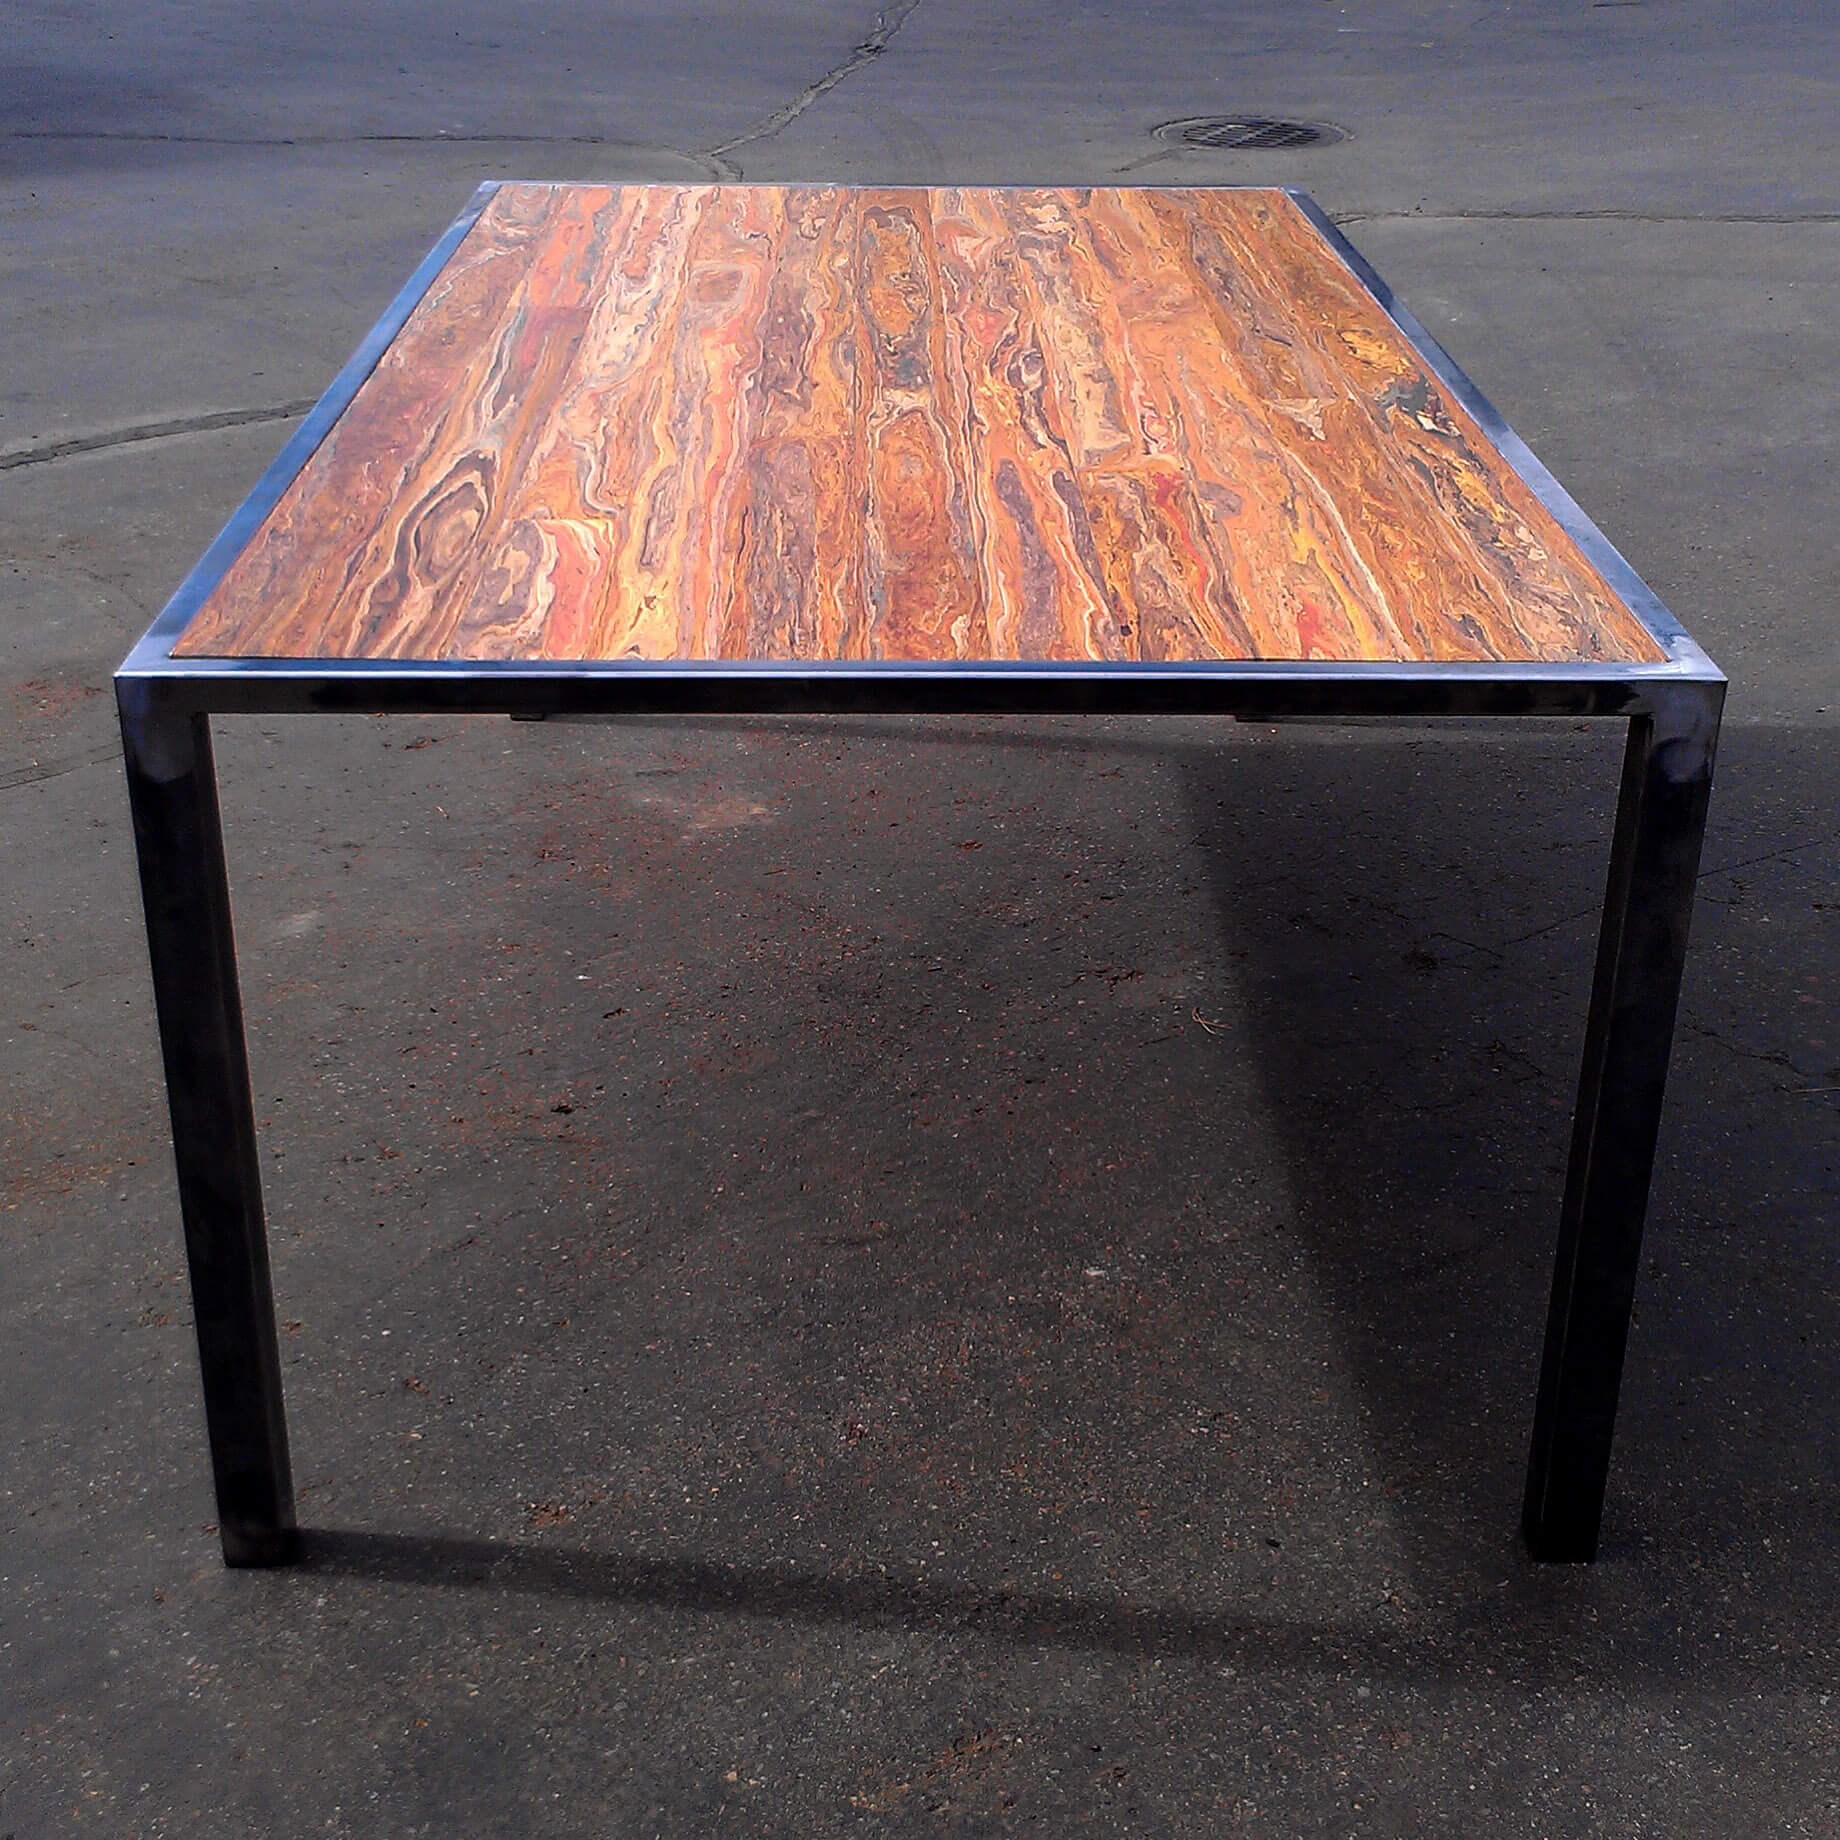 Simple custom table